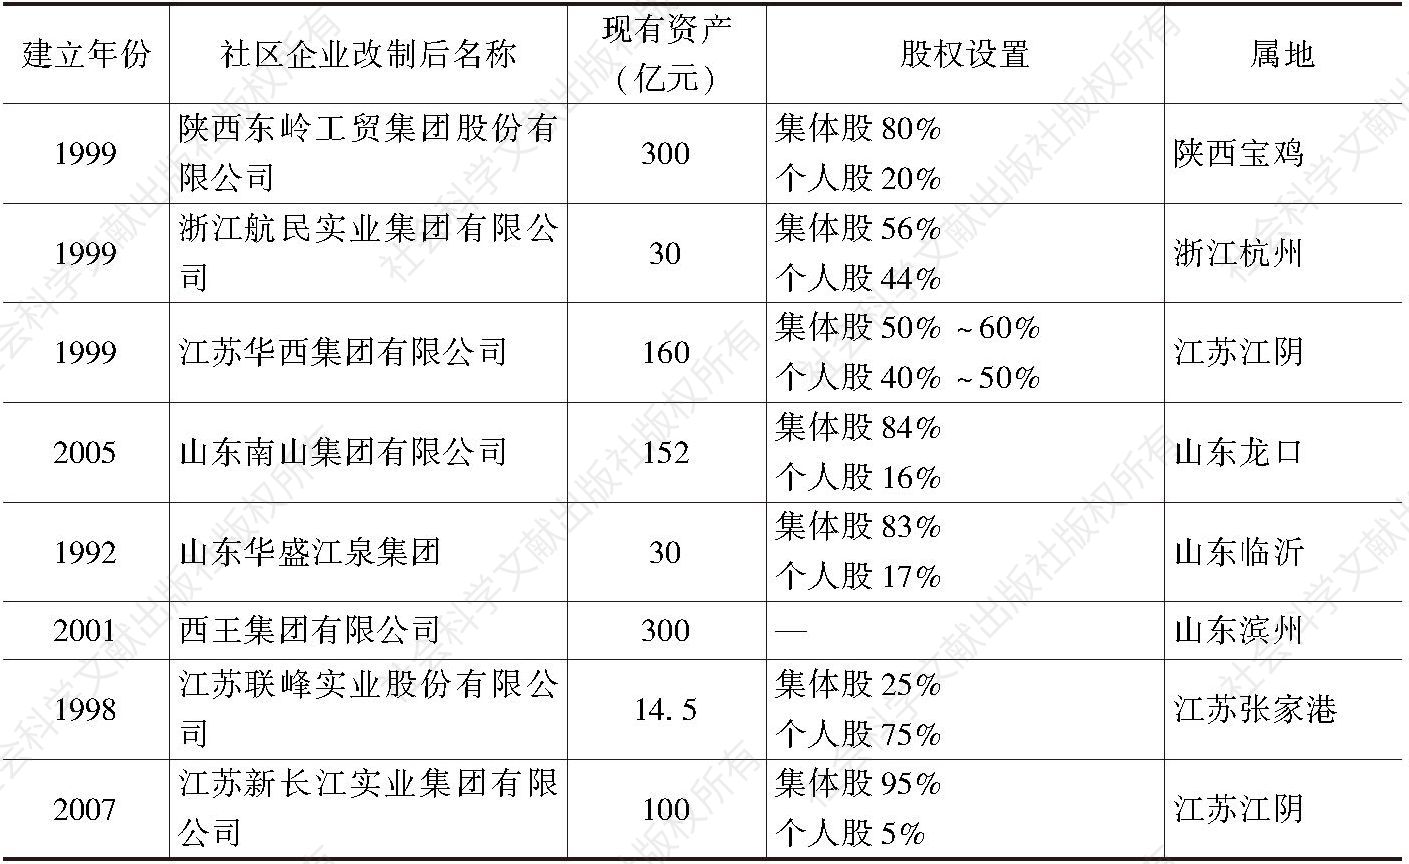 表4-1 中国农村社区股份合作制度建立情况